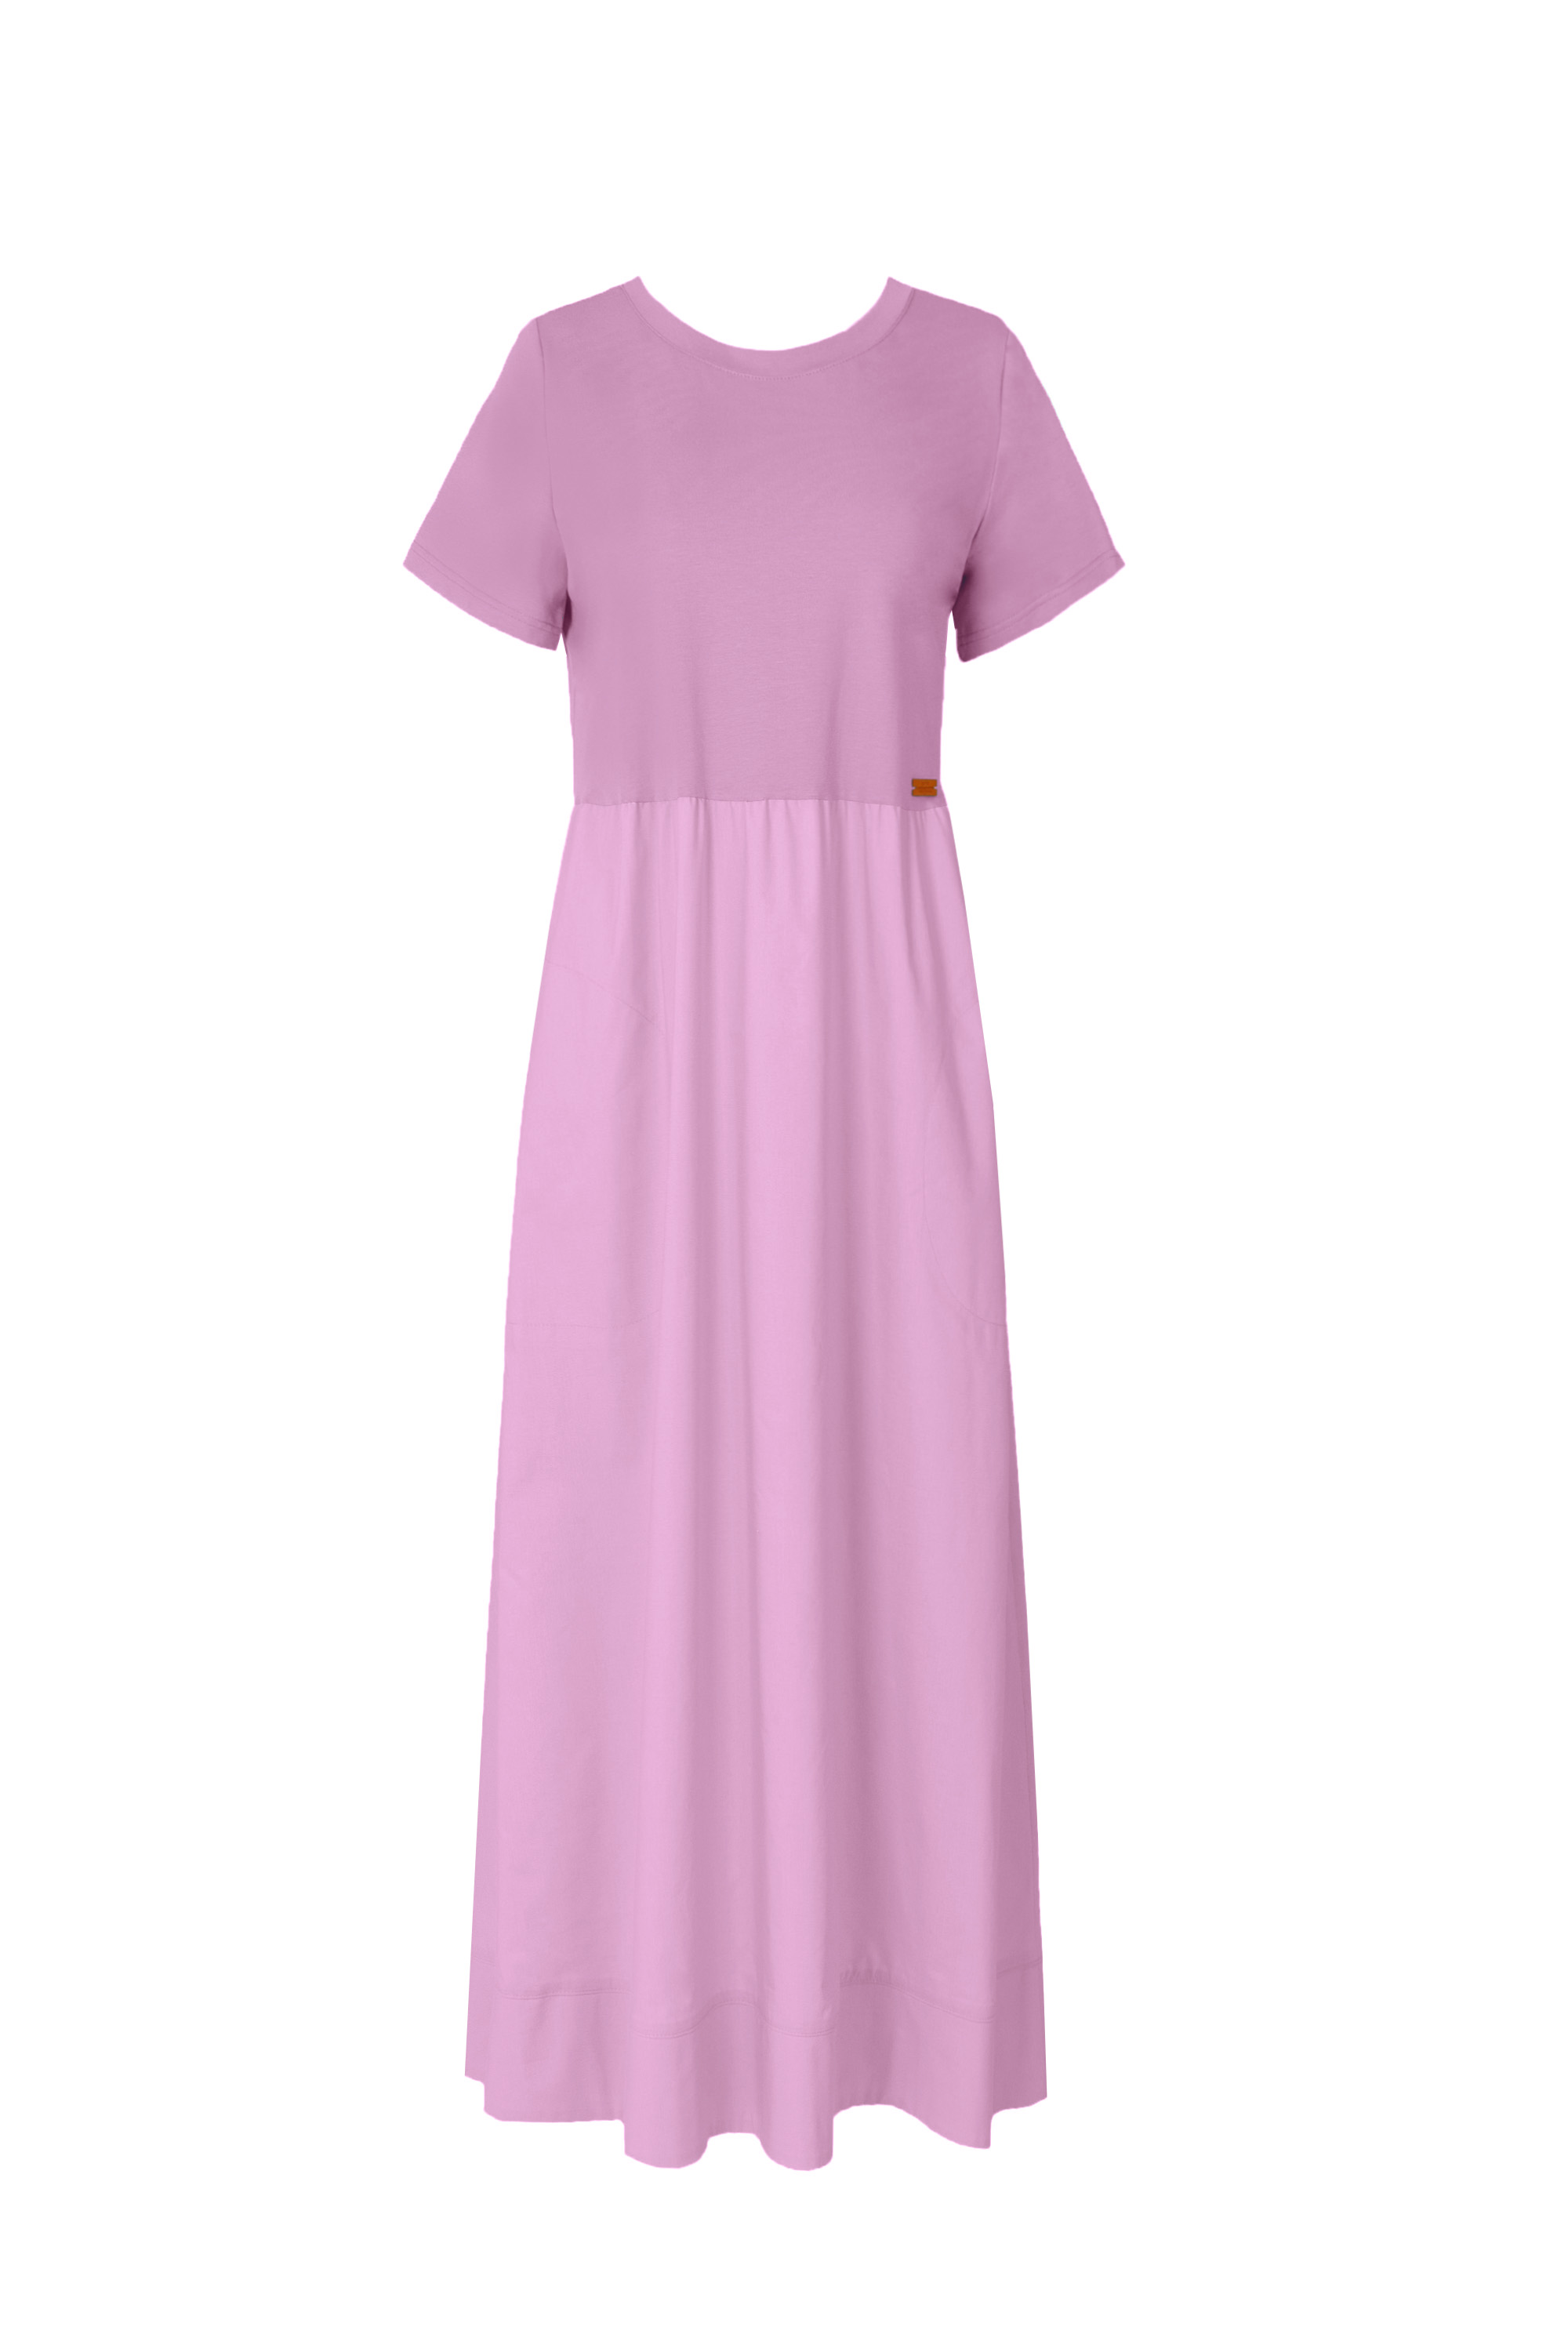 Платье женское 5К-12631-1